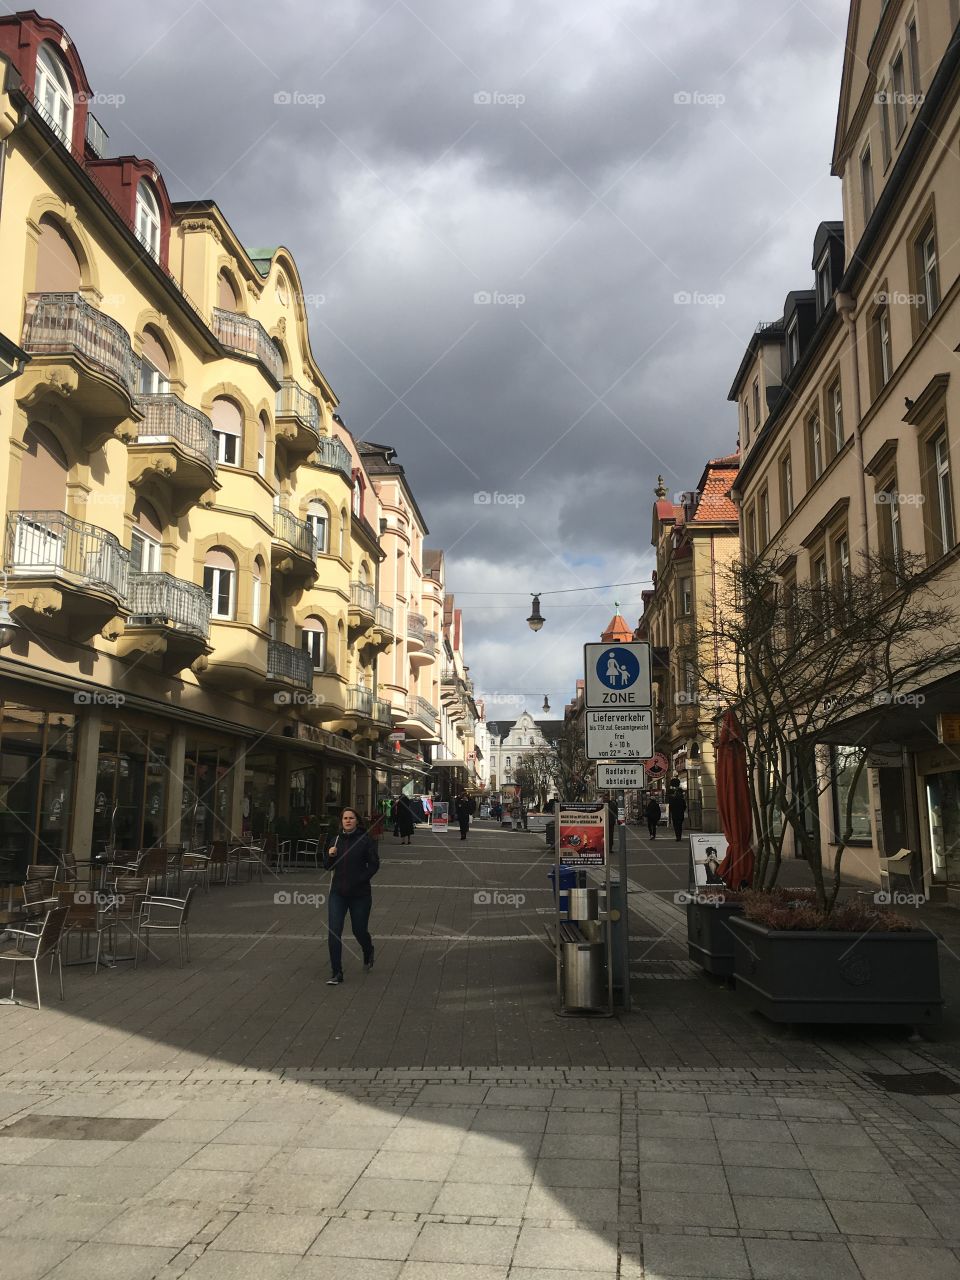 Street in Germany